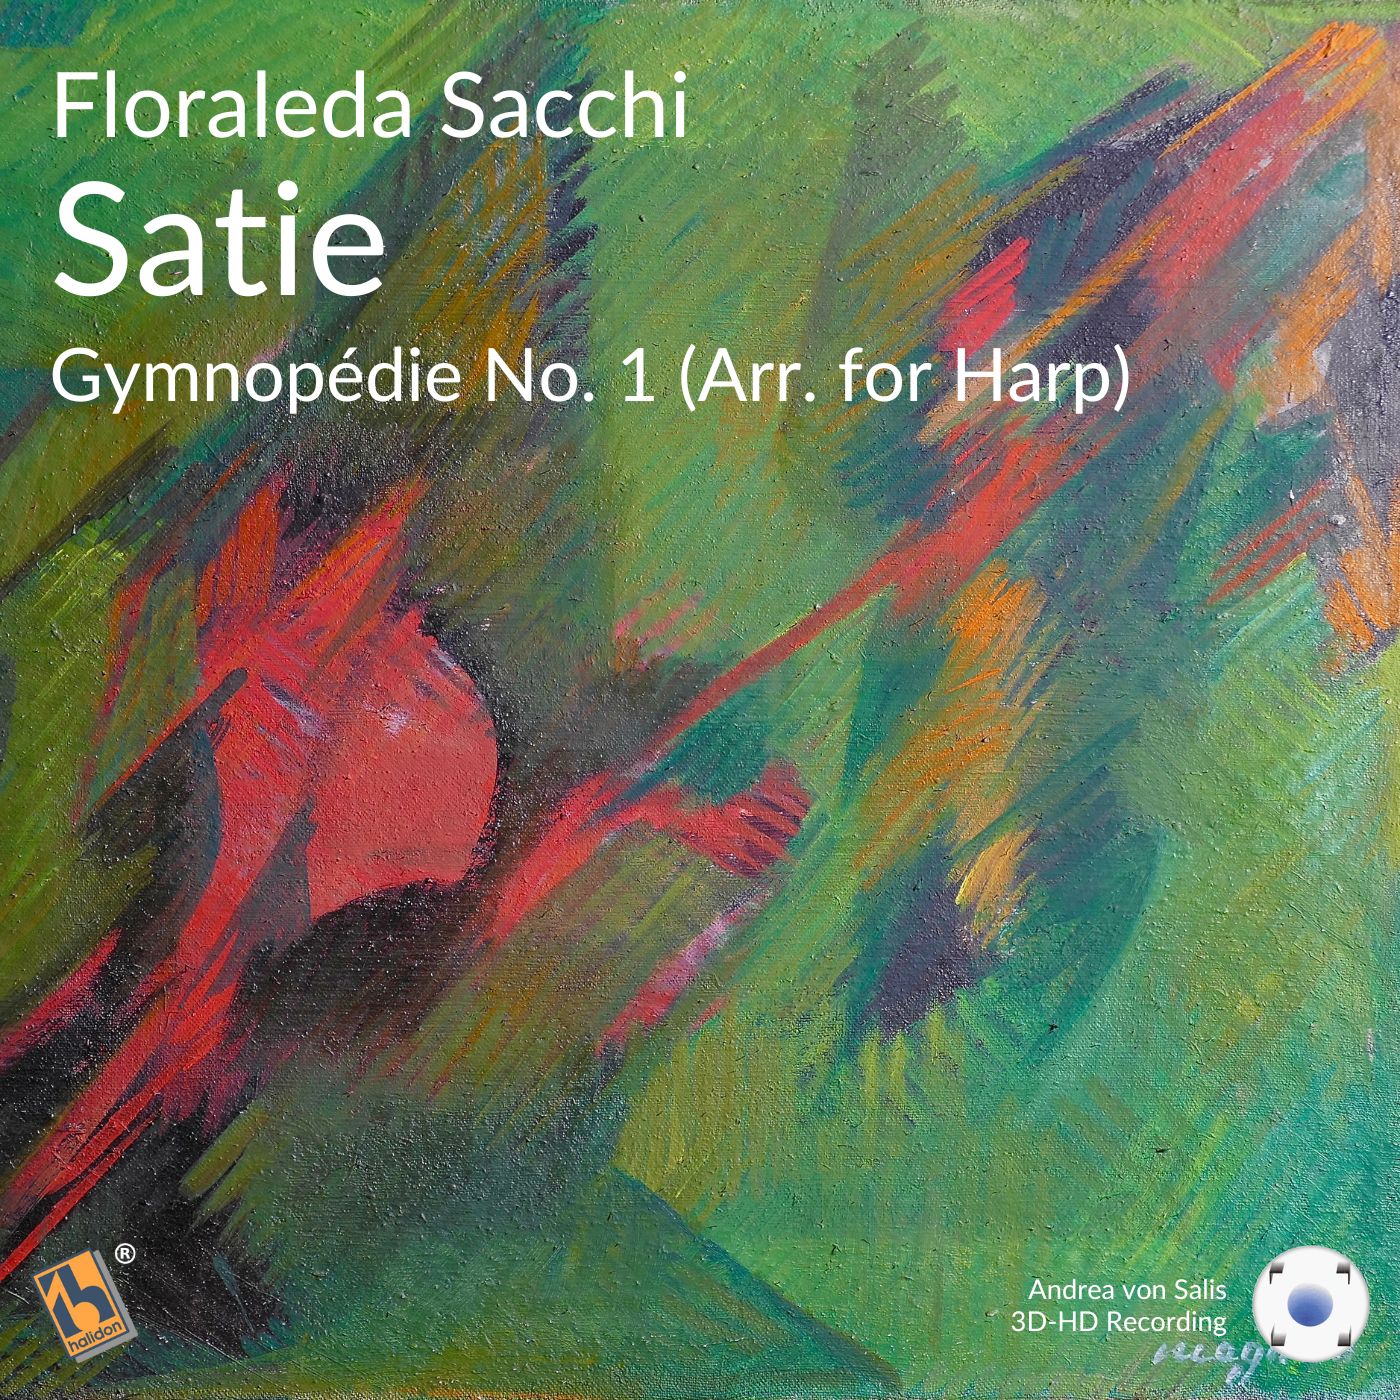 Satie: Gymnopédie No. 1 (Arr. for Harp - 432 Hz)